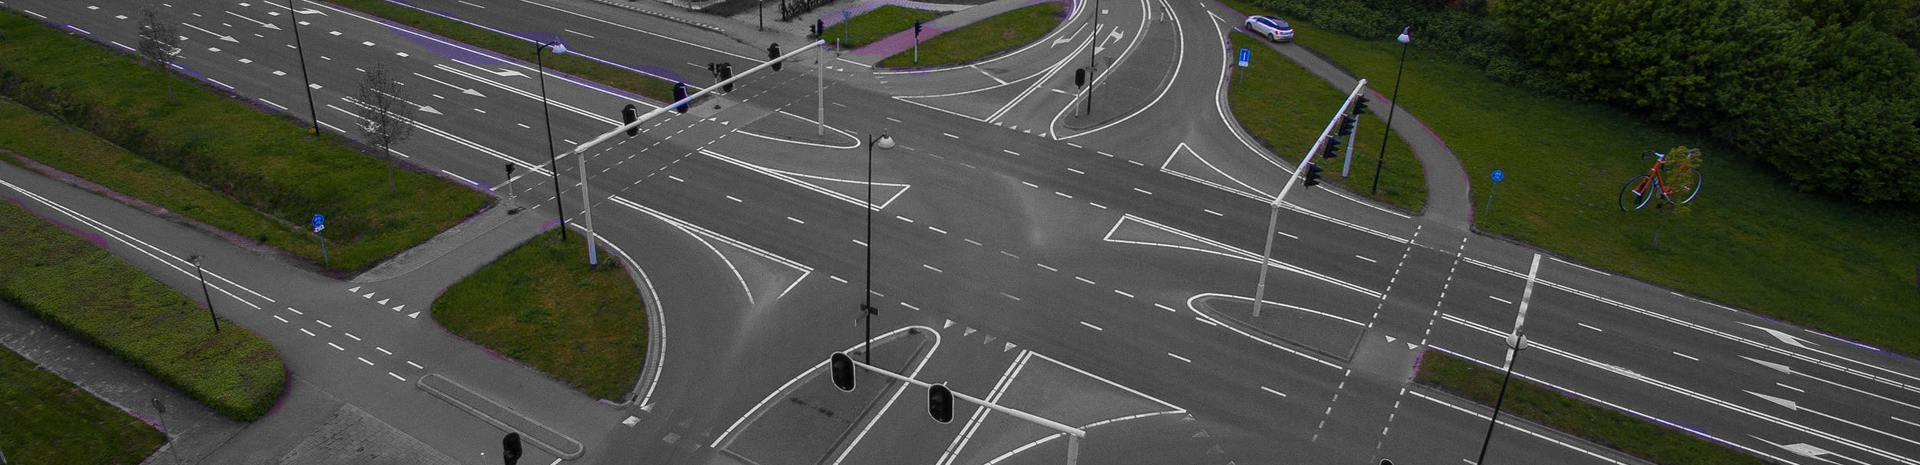 Het aantal verkeersongelukken op kruispunten neemt toe | LetselPro